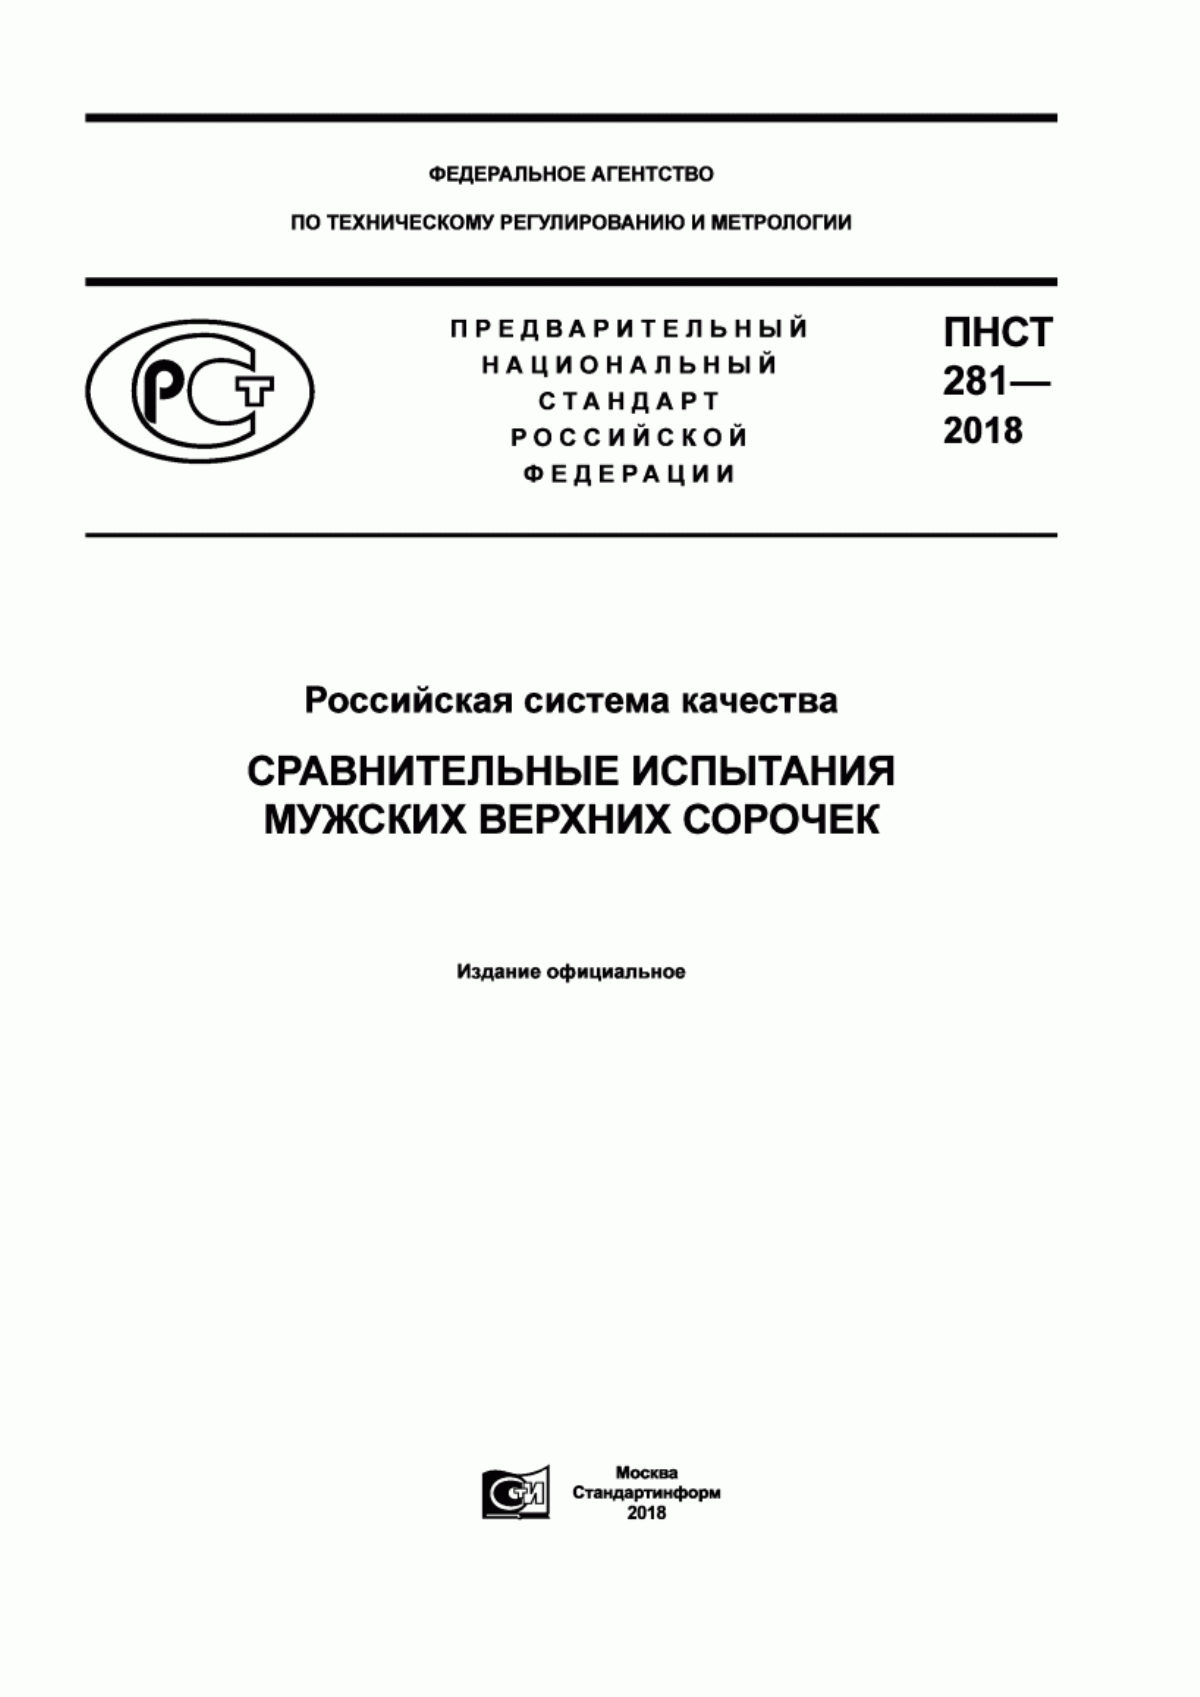 ПНСТ 281-2018 Российская система качества. Сравнительные испытания мужских верхних сорочек